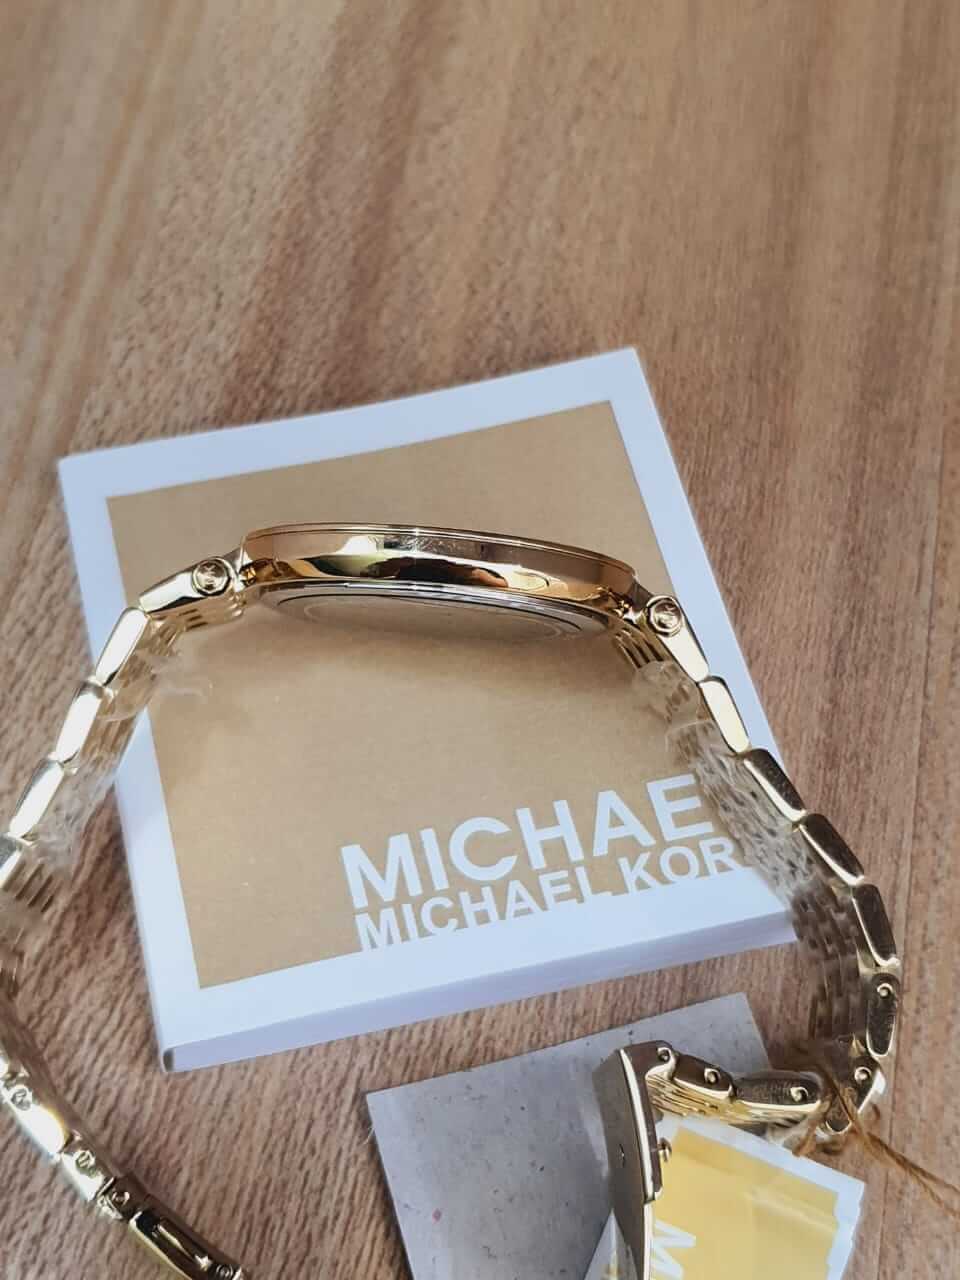 Michael Kors Women’s Quartz Stainless Steel Gold Dial 39mm Watch MK3398